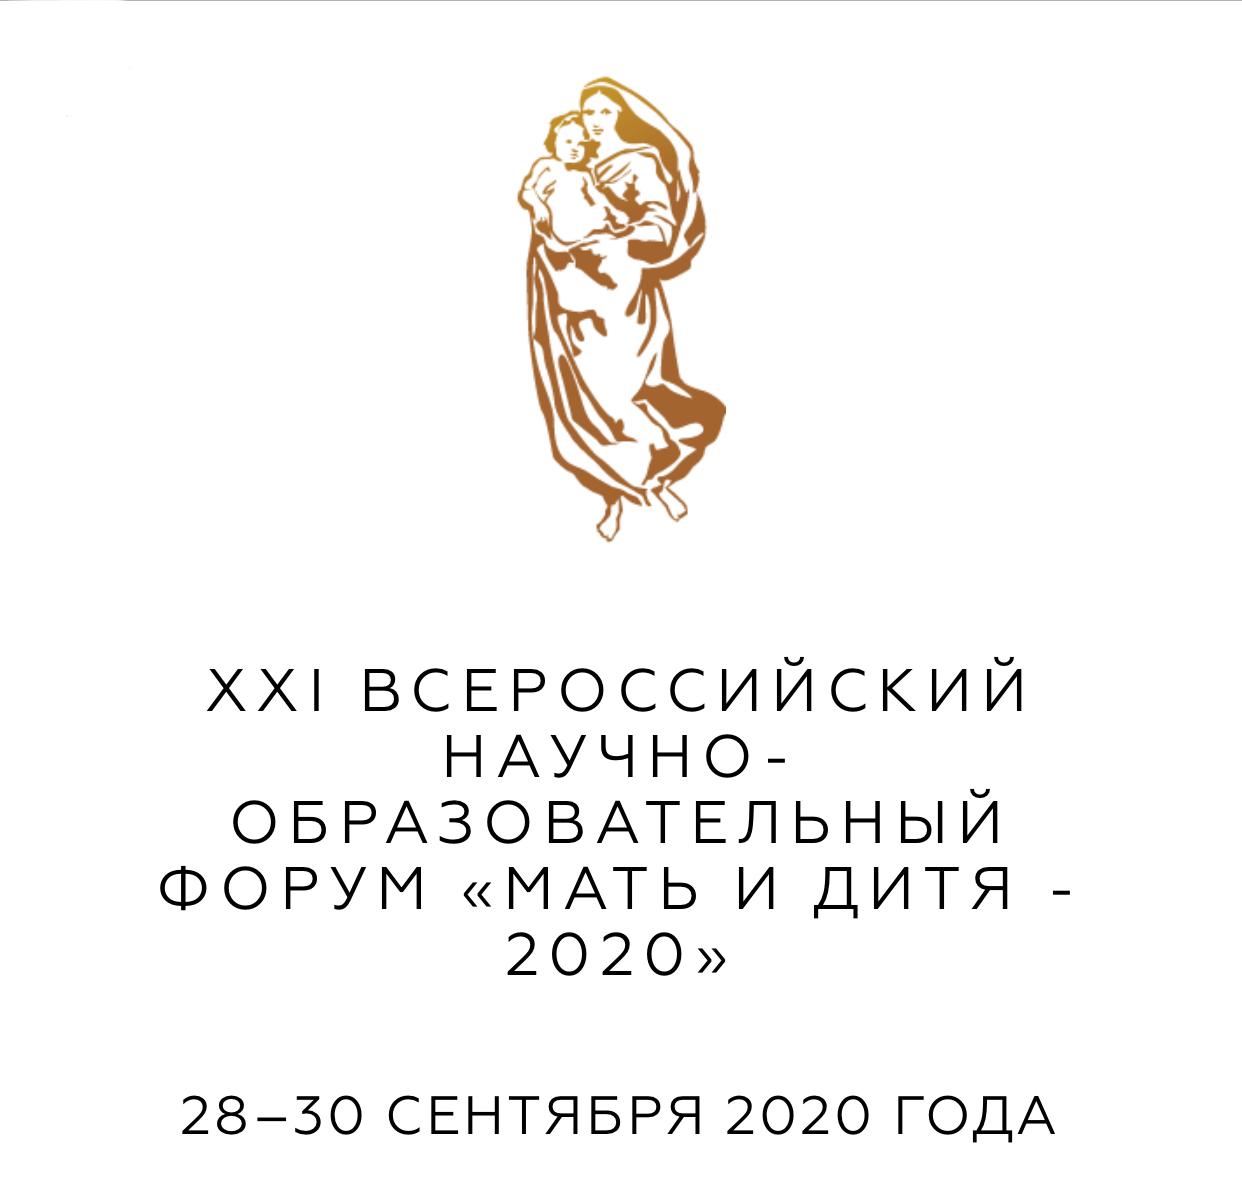 28-30 сентября состоялся XXI Всероссийский научно-образовательный форум “Мать и Дитя-2020”